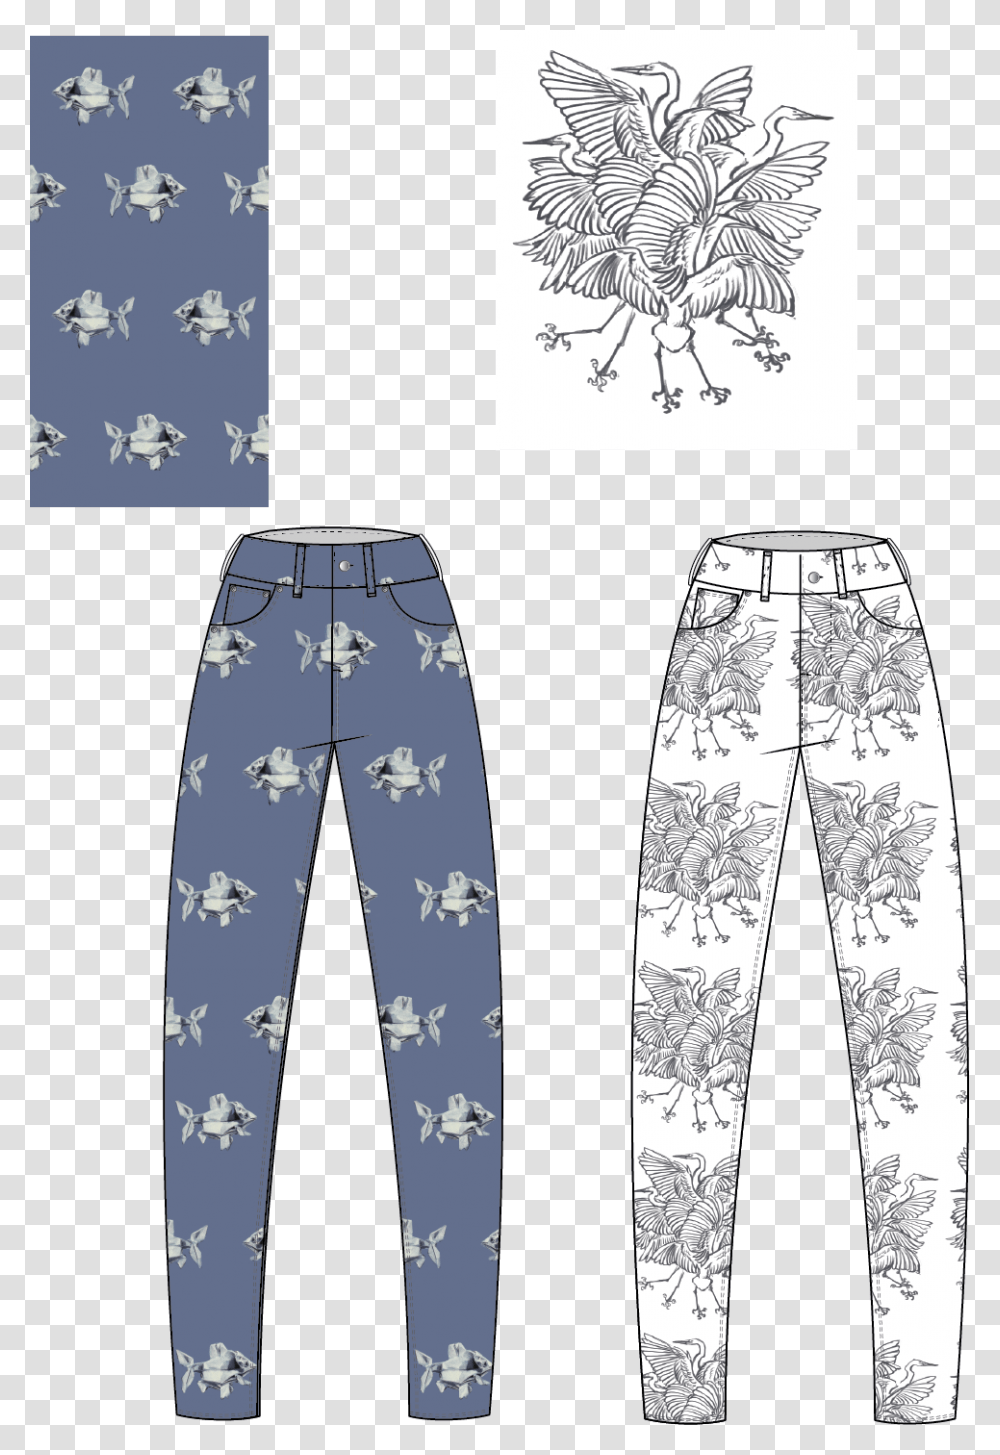 Drawn Jeans Cool Painted Pajamas, Apparel, Pants, Bird Transparent Png